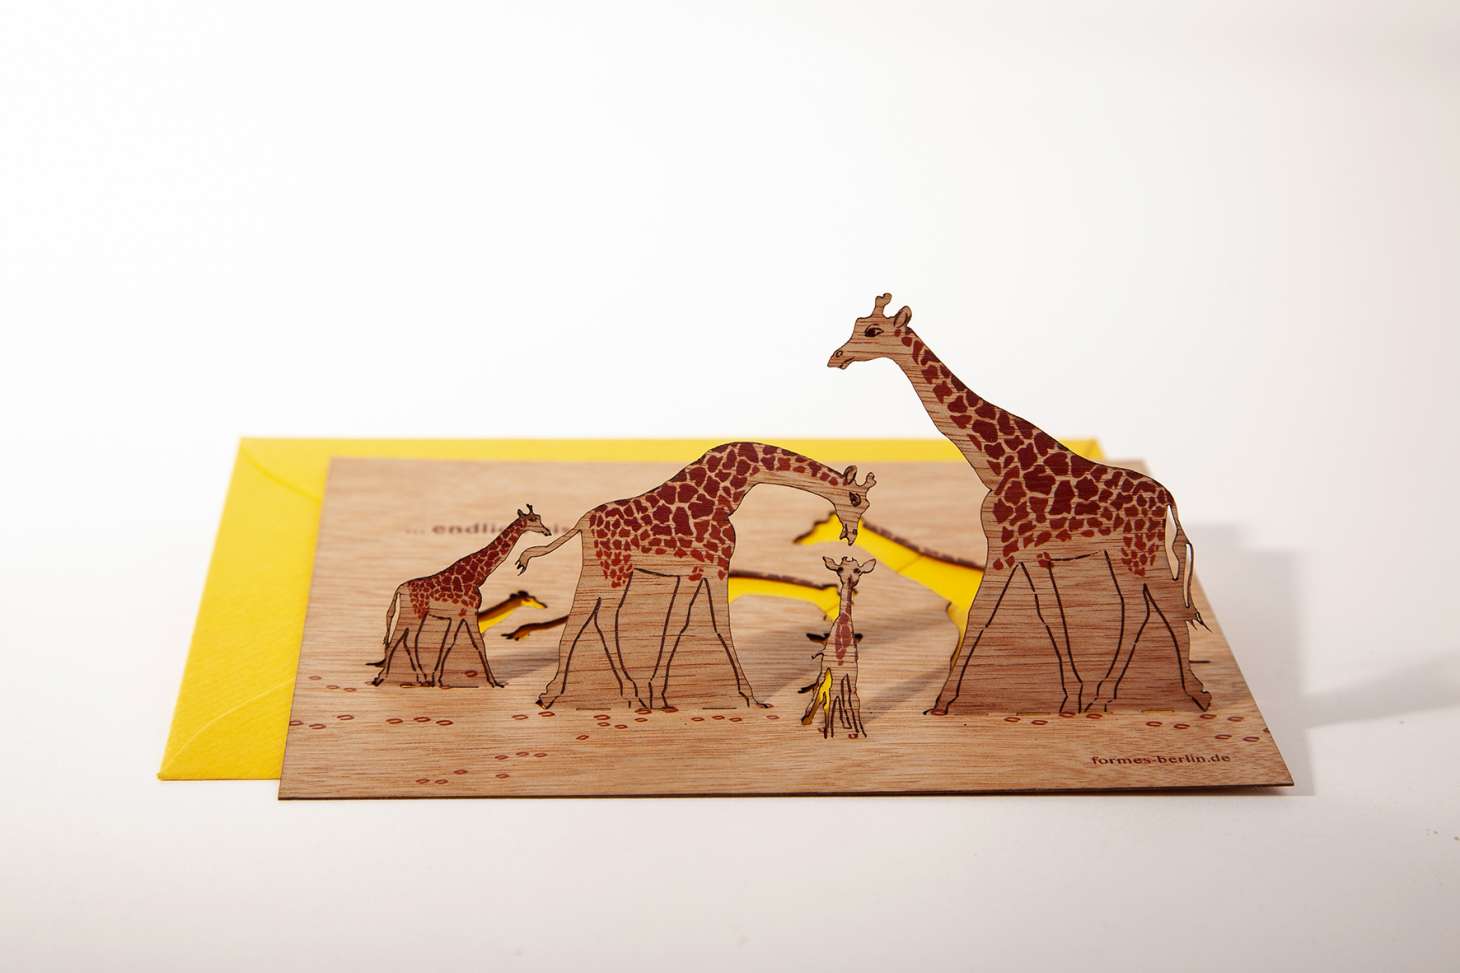 Holz-Grusskarte mit Kuvert, Giraffe, "Endlich bist du da!"